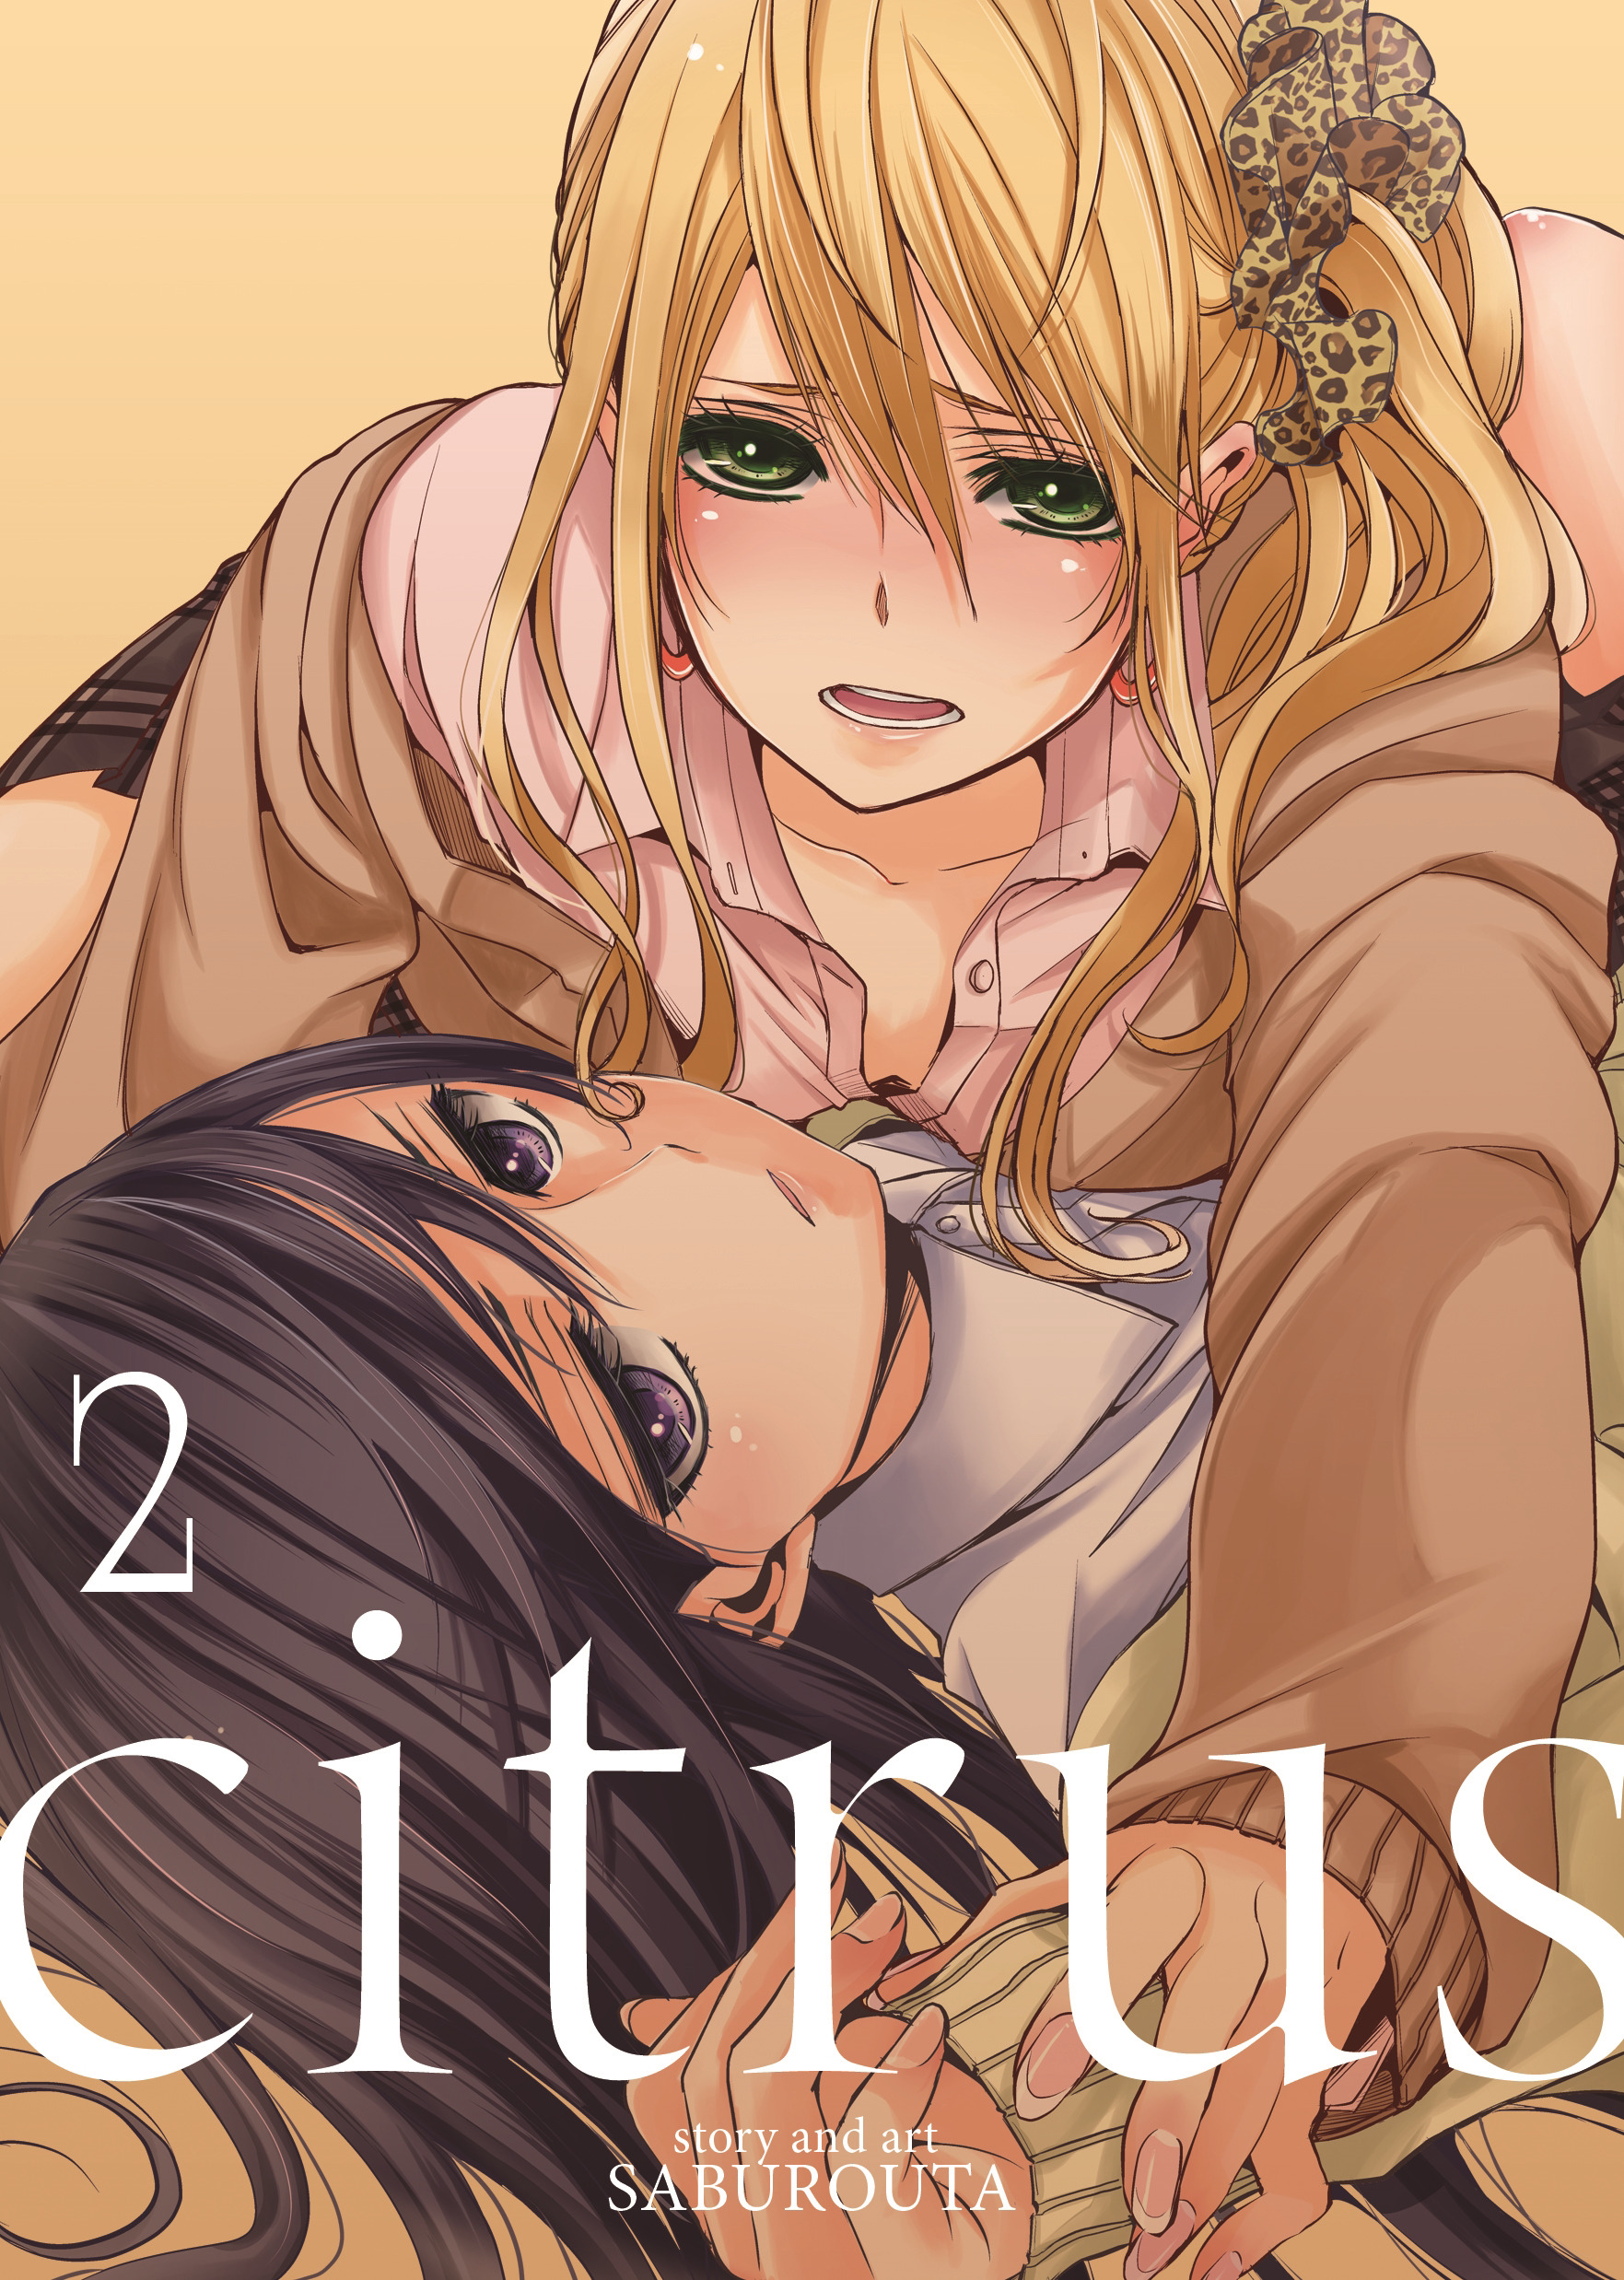 Citrus Vol. 2 | Saburouta